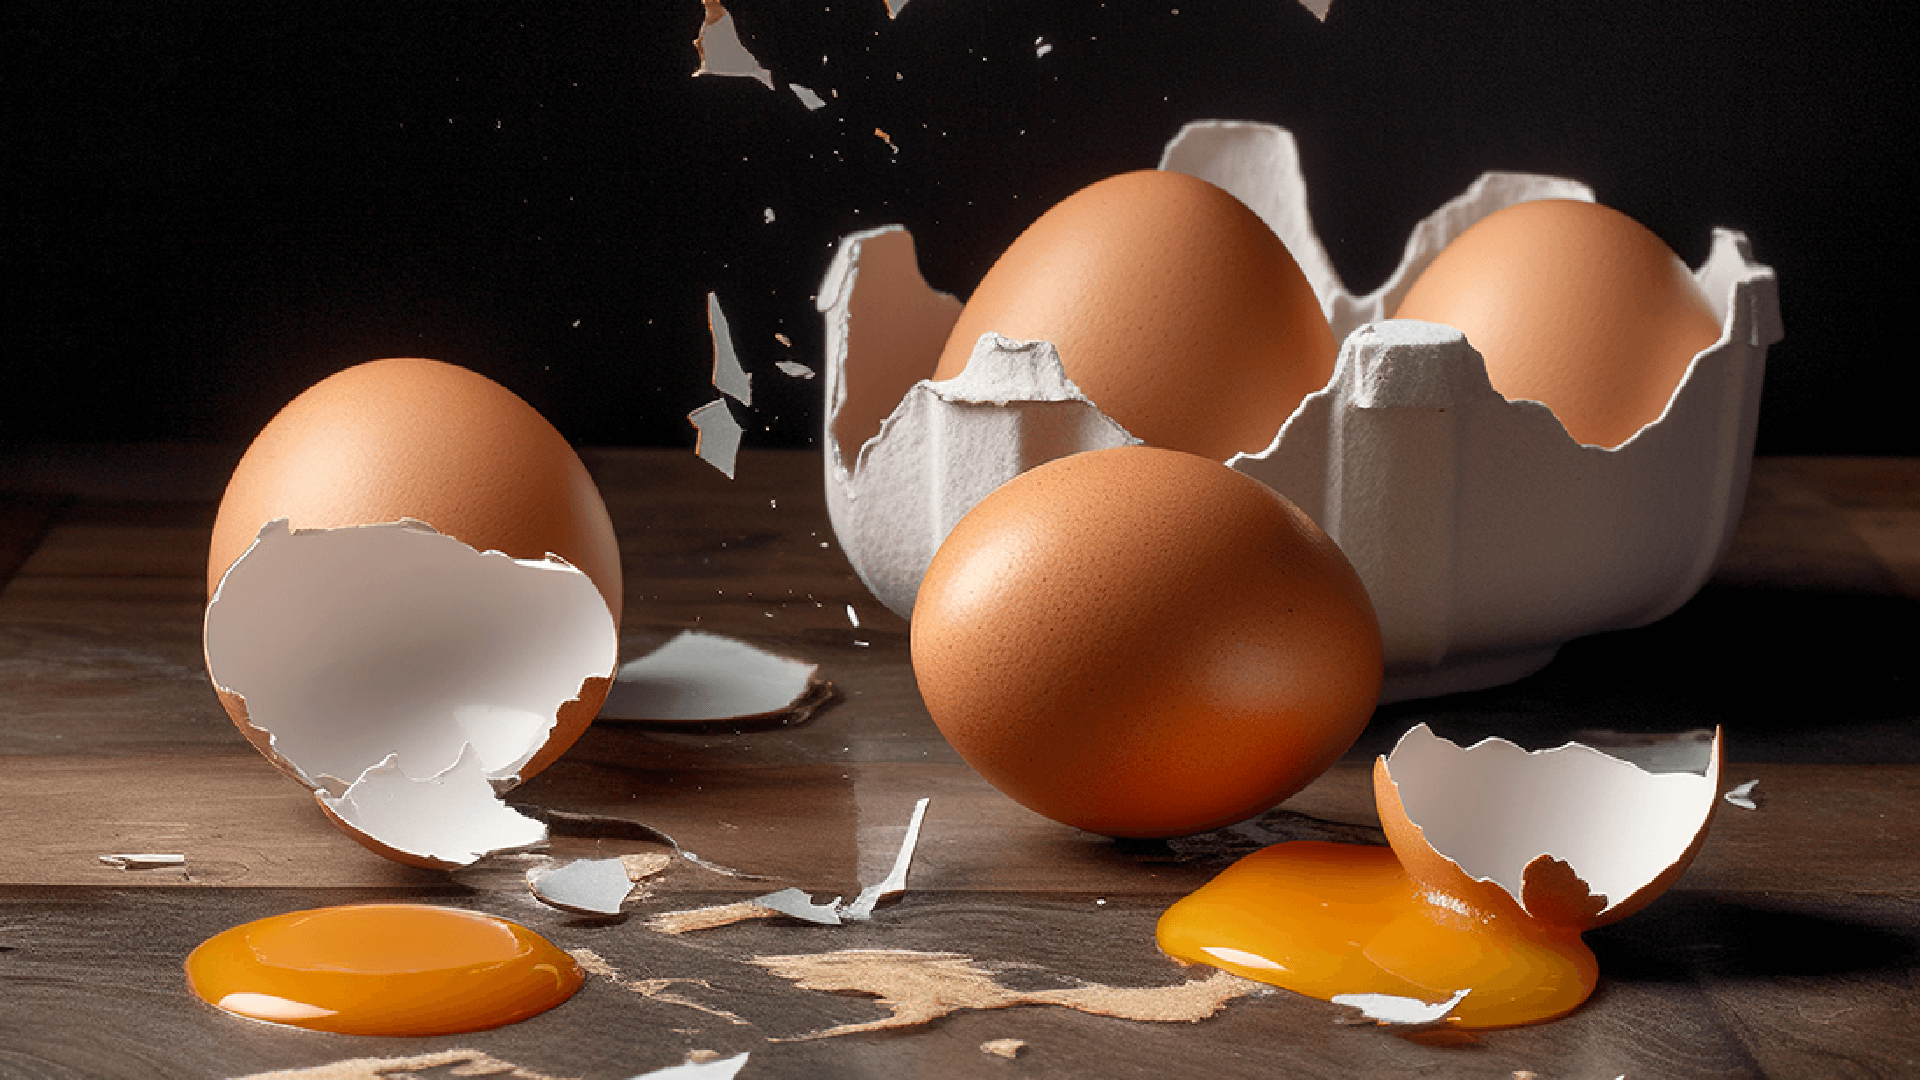 eggs in a carton with broken egg